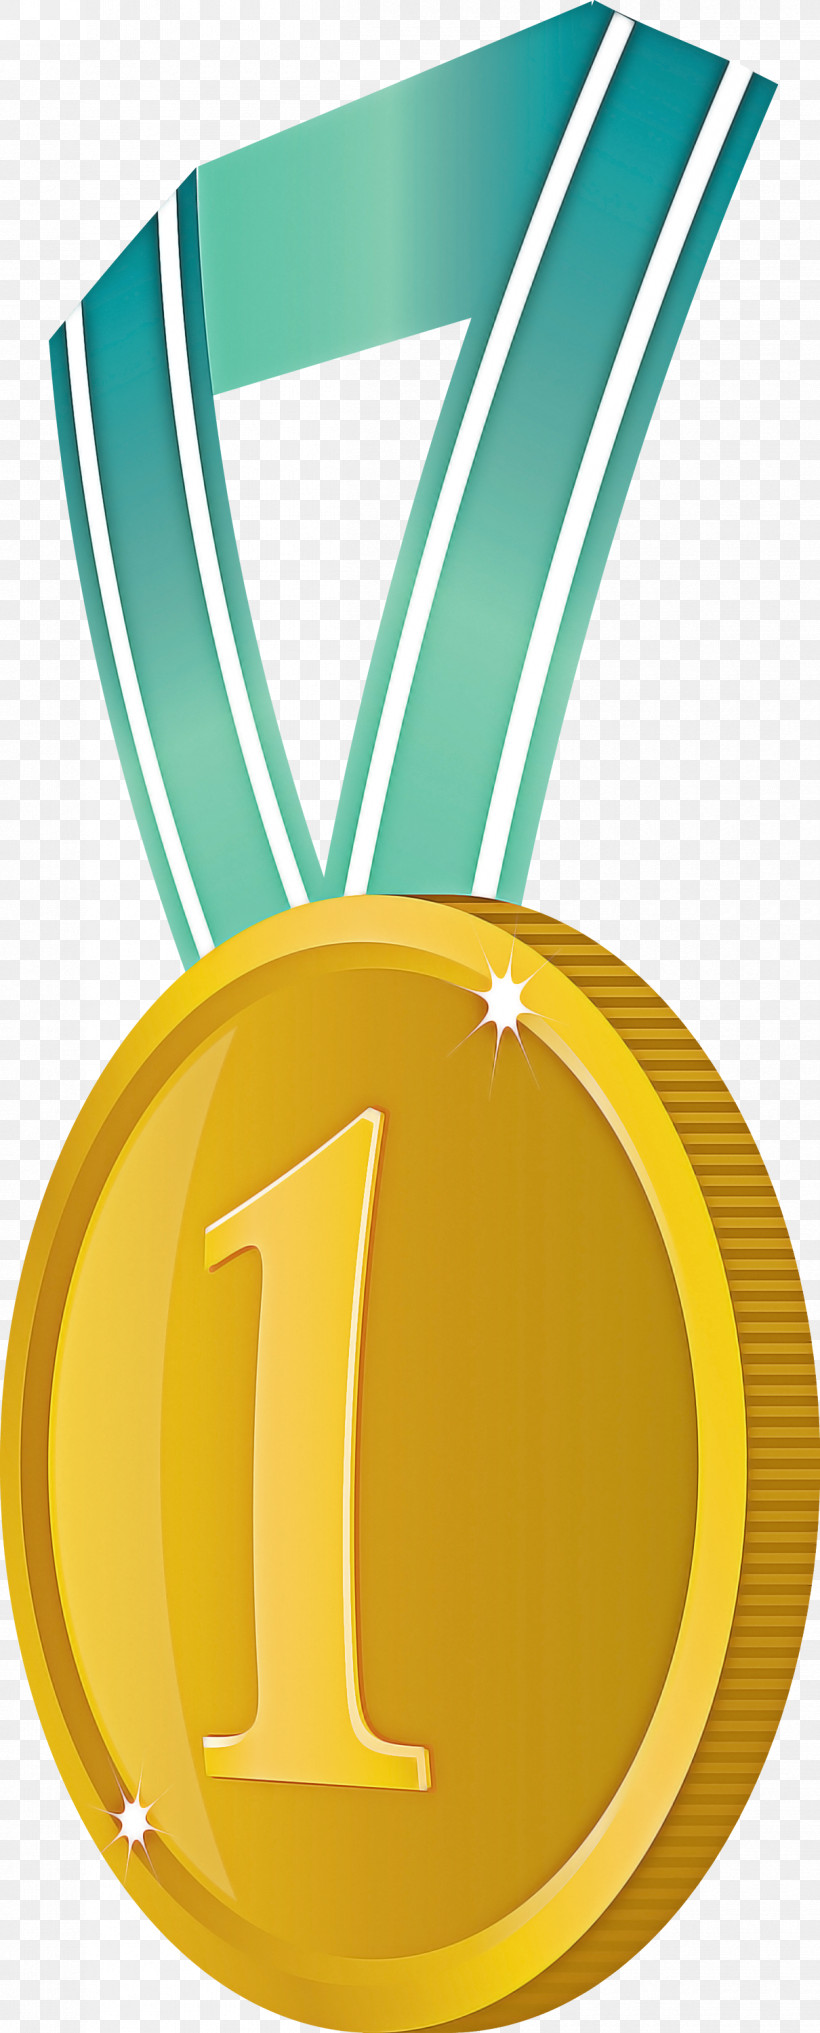 Gold Badge No 1 Badge Award Gold Badge, PNG, 1210x3000px, Gold Badge, Award, Award Gold Badge, Gold, Gold Medal Download Free